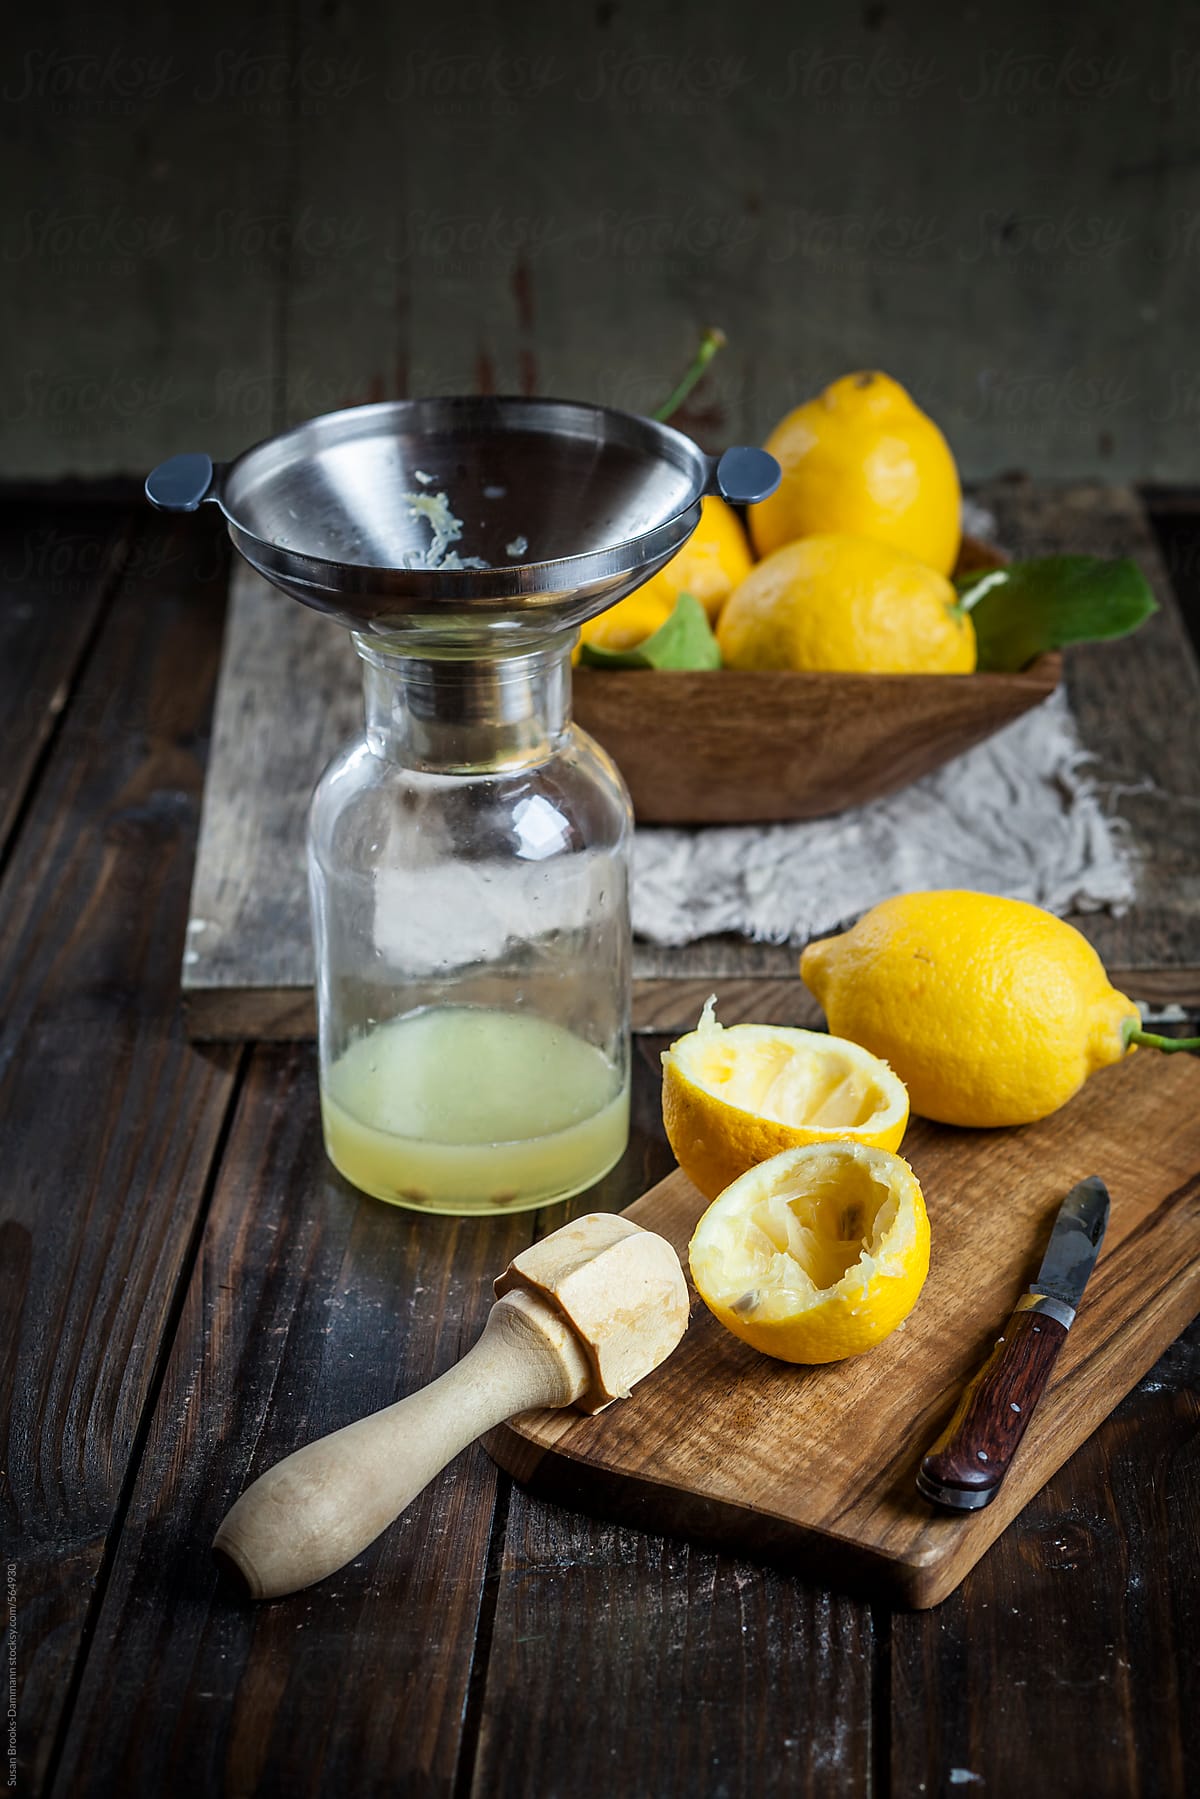 Making lemon juice